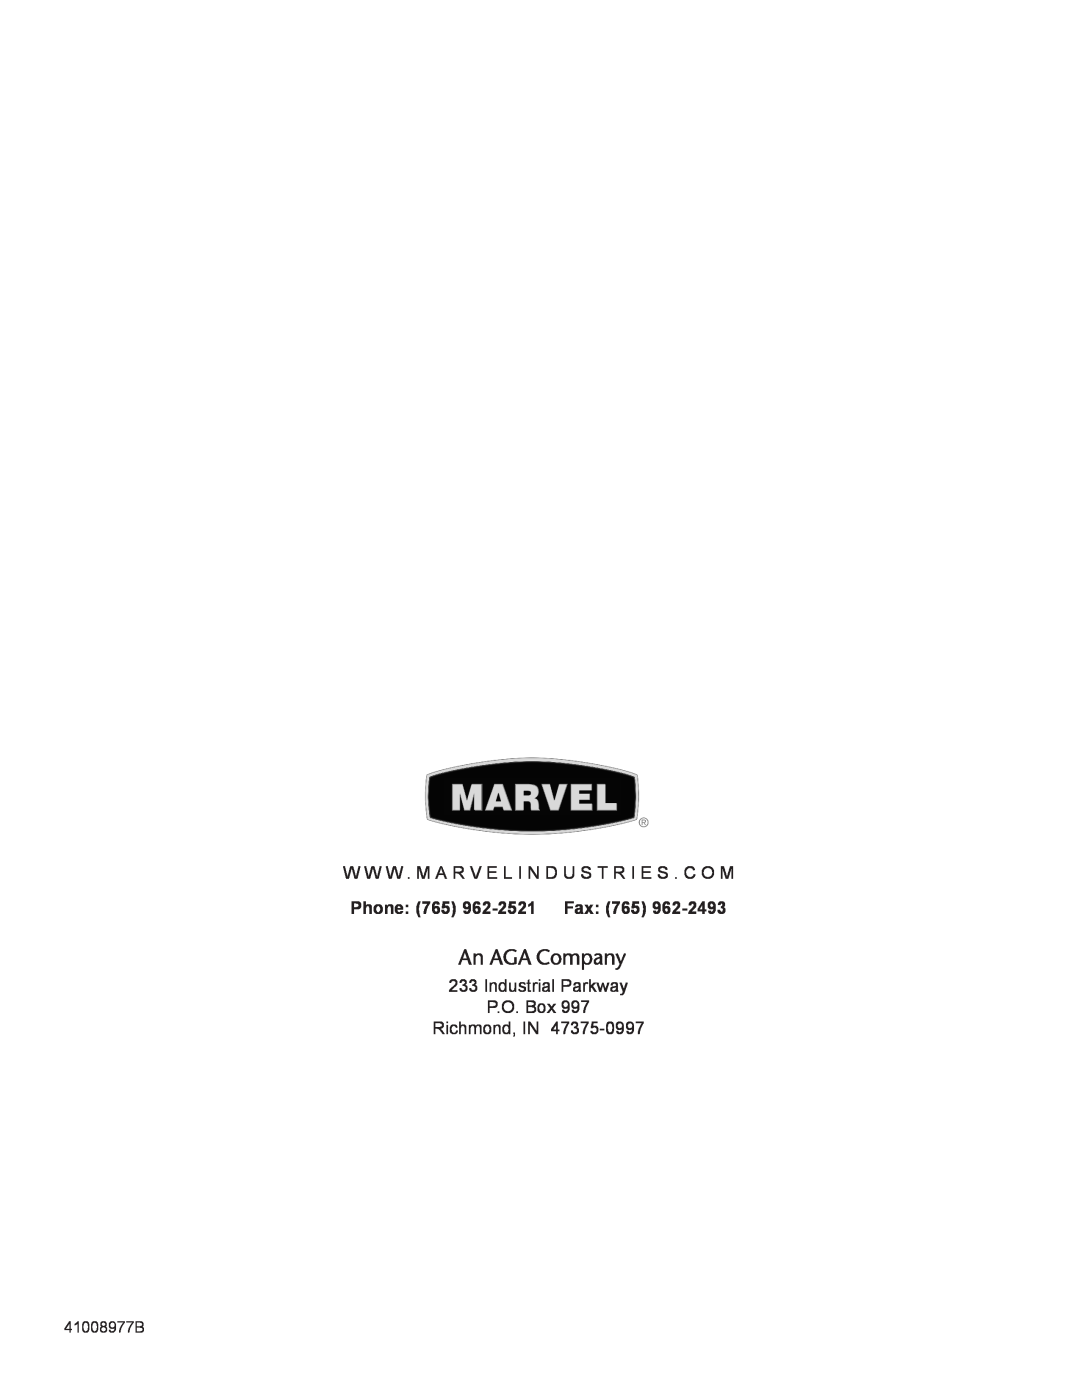 Marvel Industries 8SBAR manual W W W . M A R V E L I N D U S T R I E S . C O M, Phone 765 962-2521Fax 